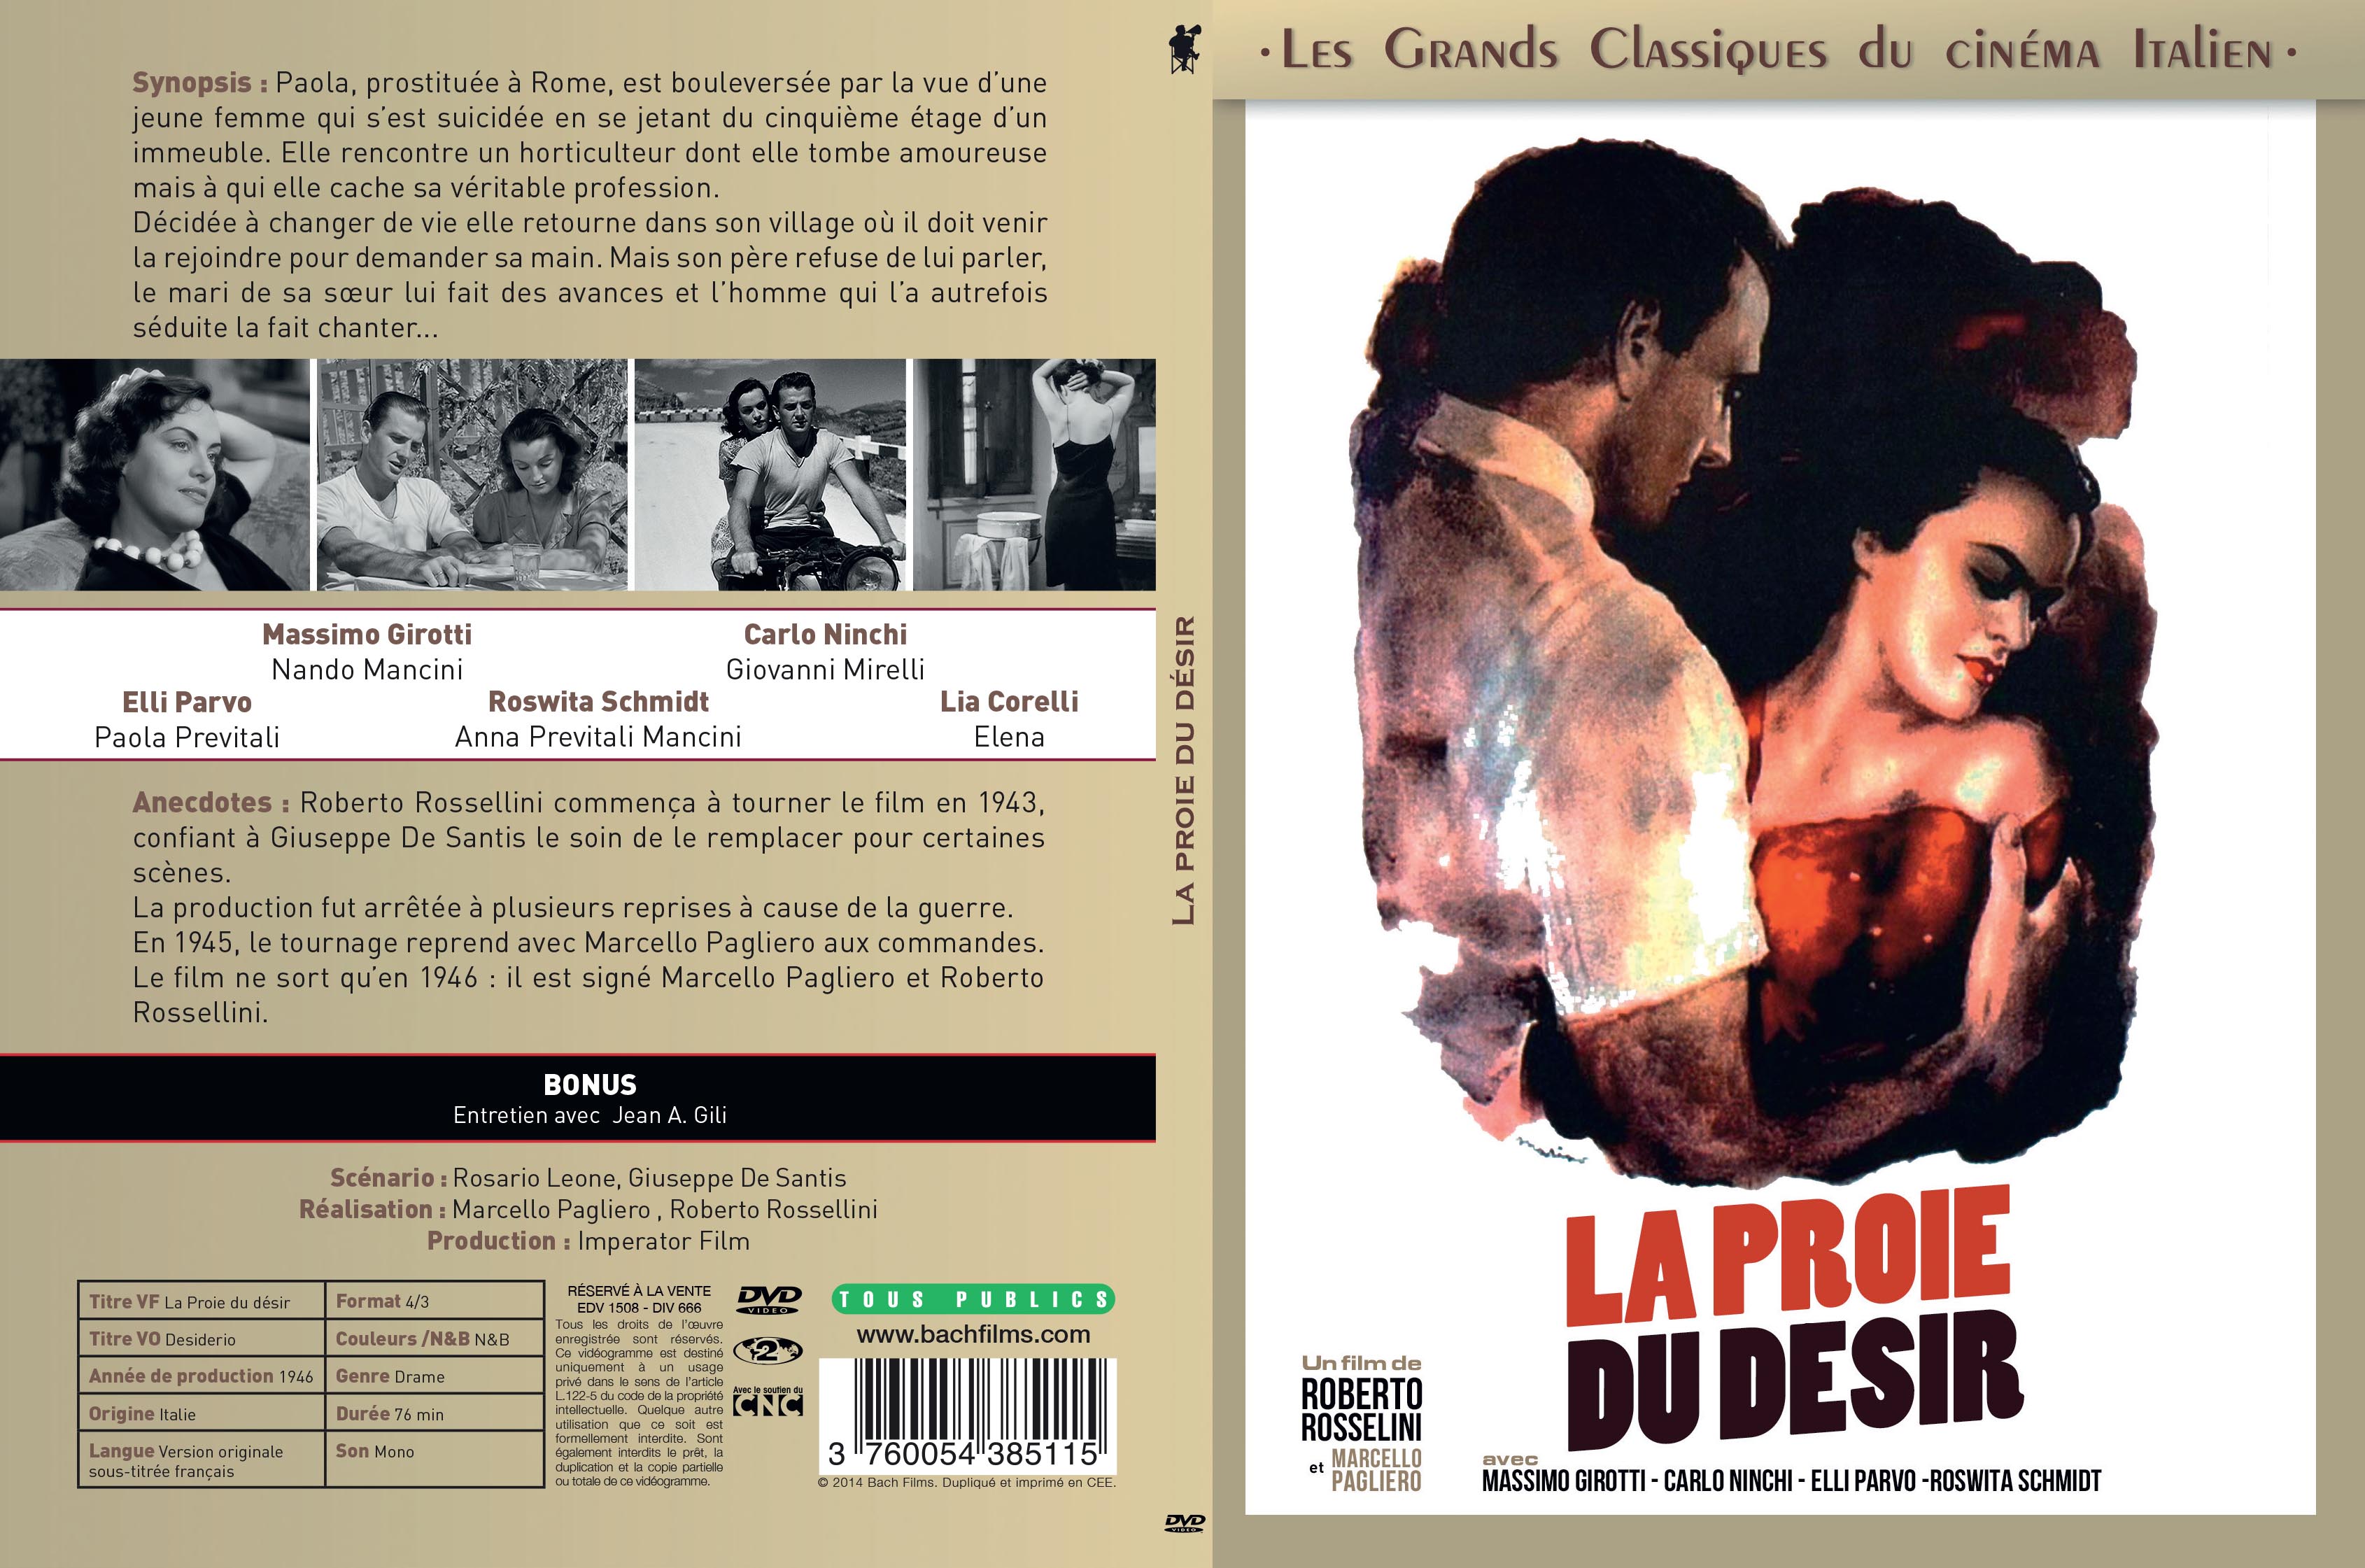 Jaquette DVD La Proie du desir